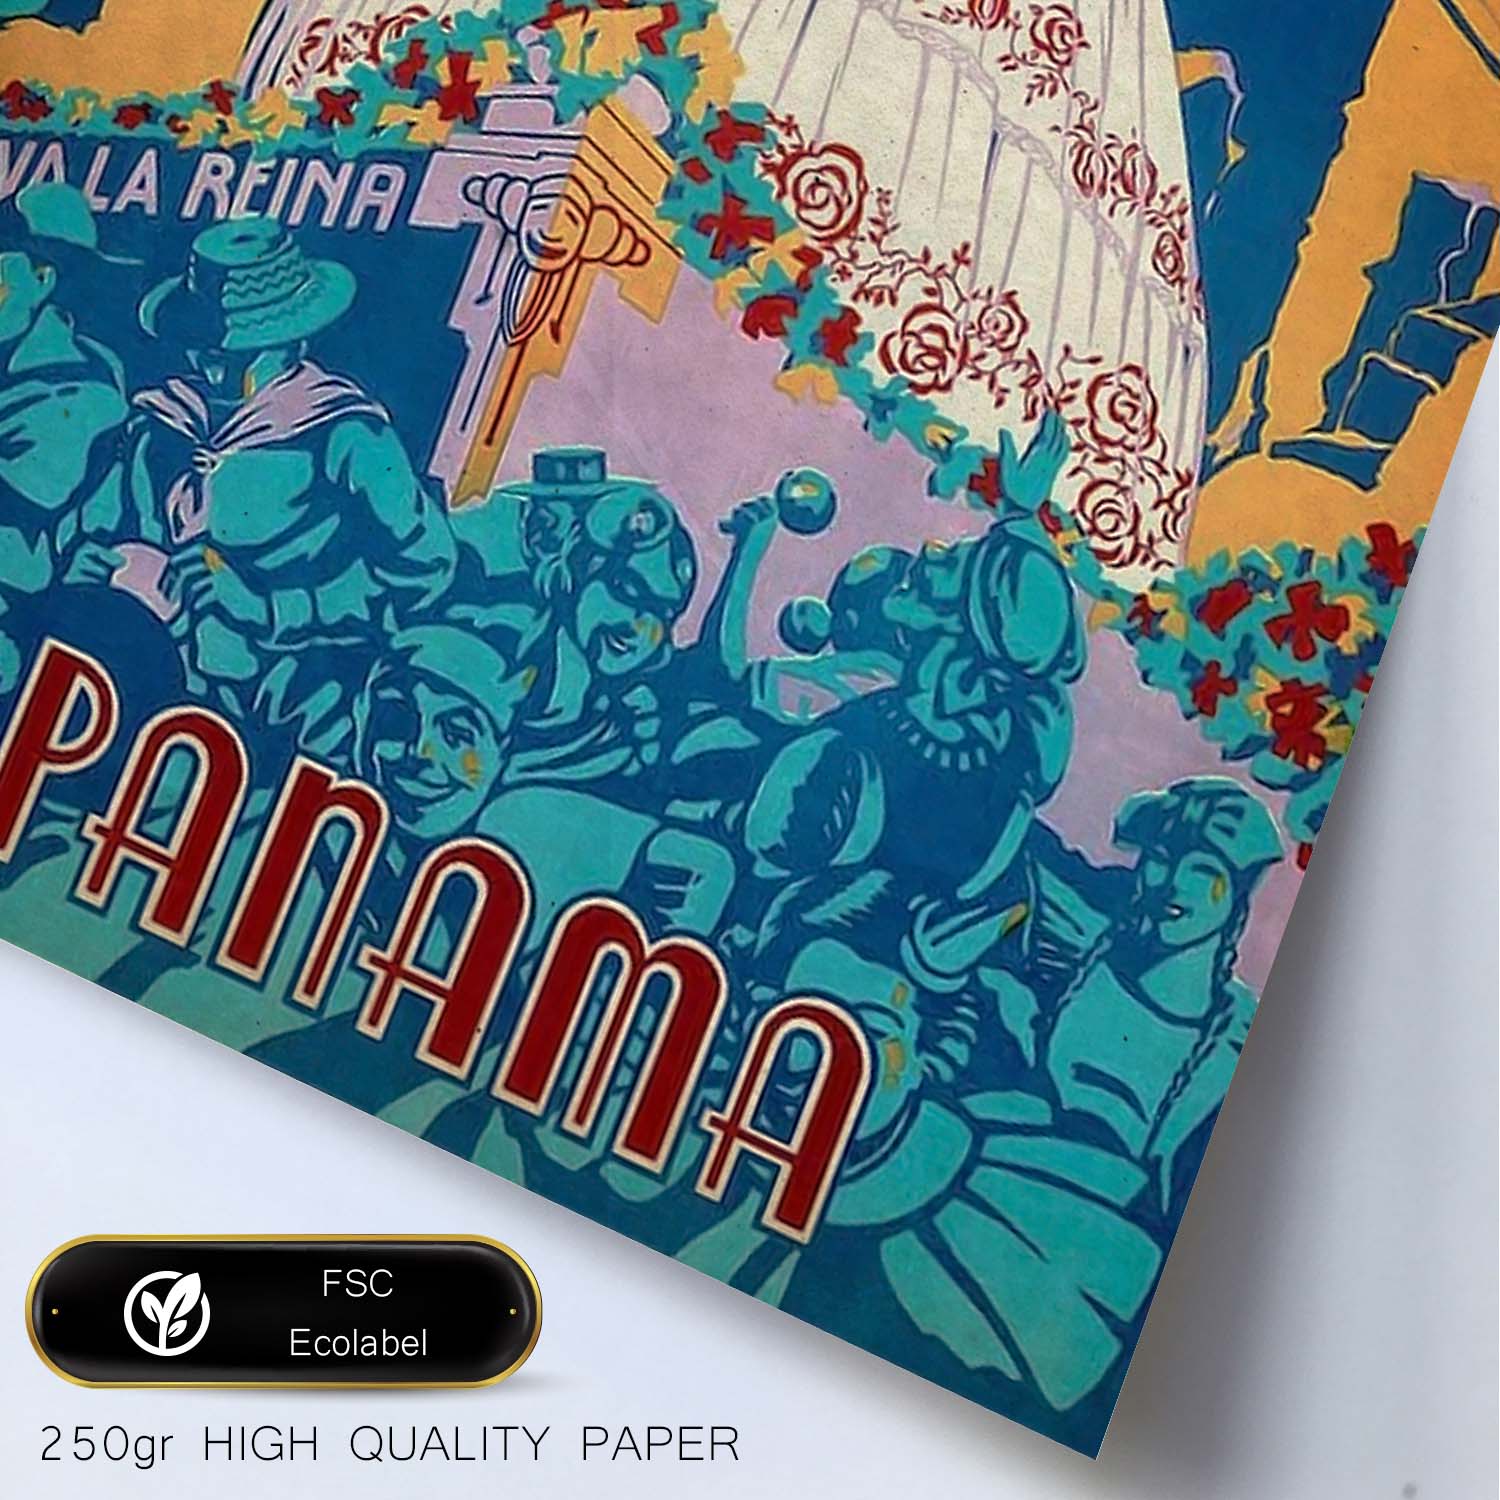 Poster vintage de Carnaval de Panama. con imágenes vintage y de publicidad antigua.-Artwork-Nacnic-Nacnic Estudio SL